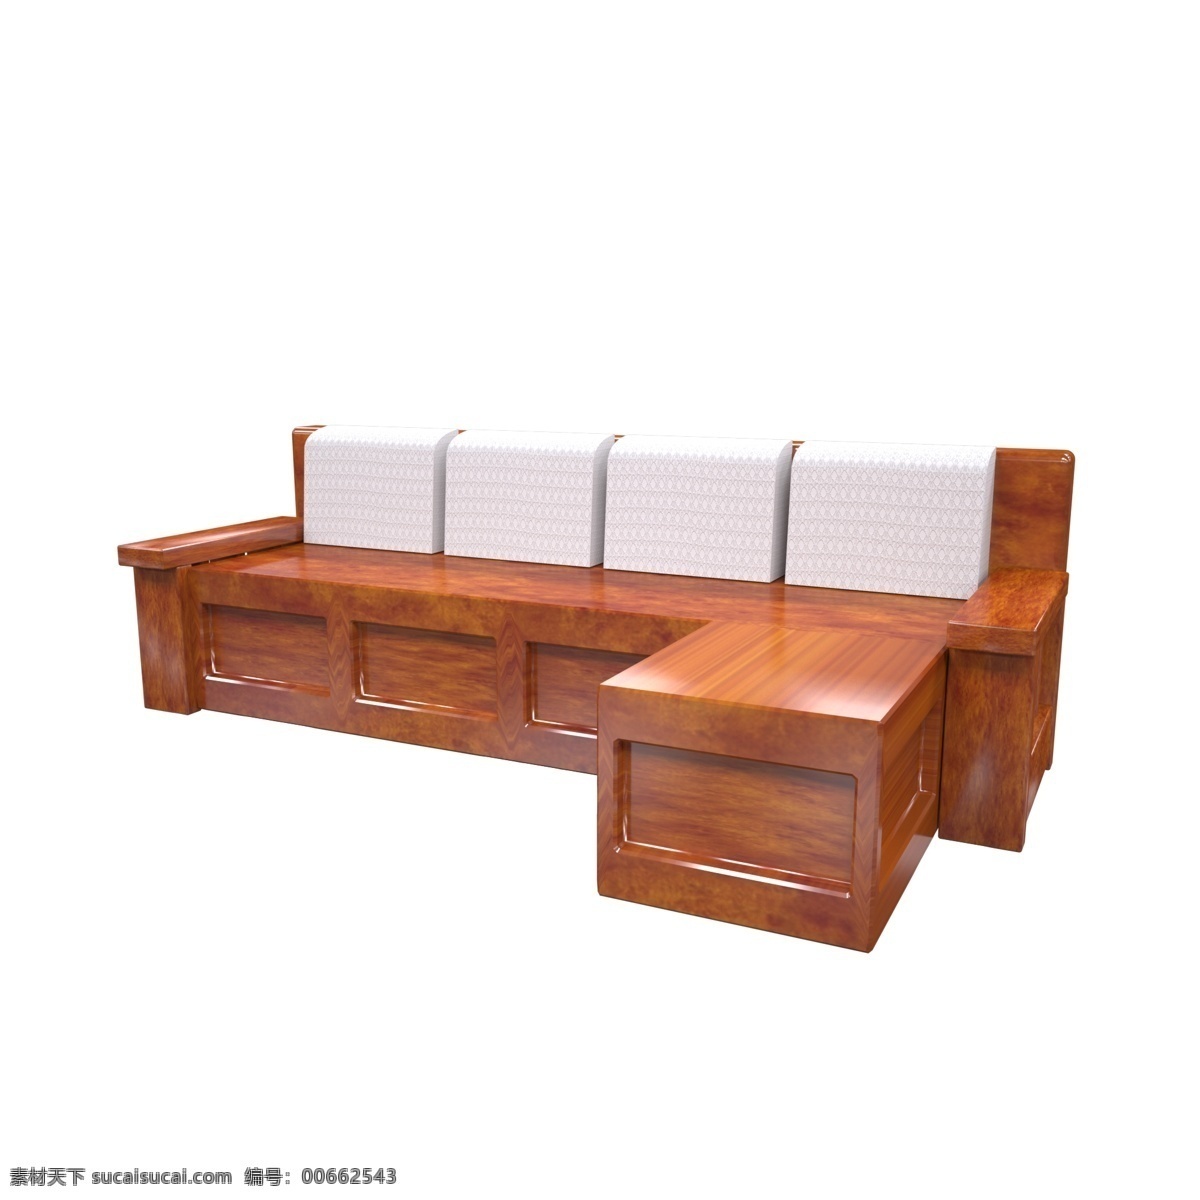 3d 仿真 古典 实木 沙发 c4d 家具 家居 仿真类家具 木质沙发 中国风 实木沙发 客厅摆件 多人沙发